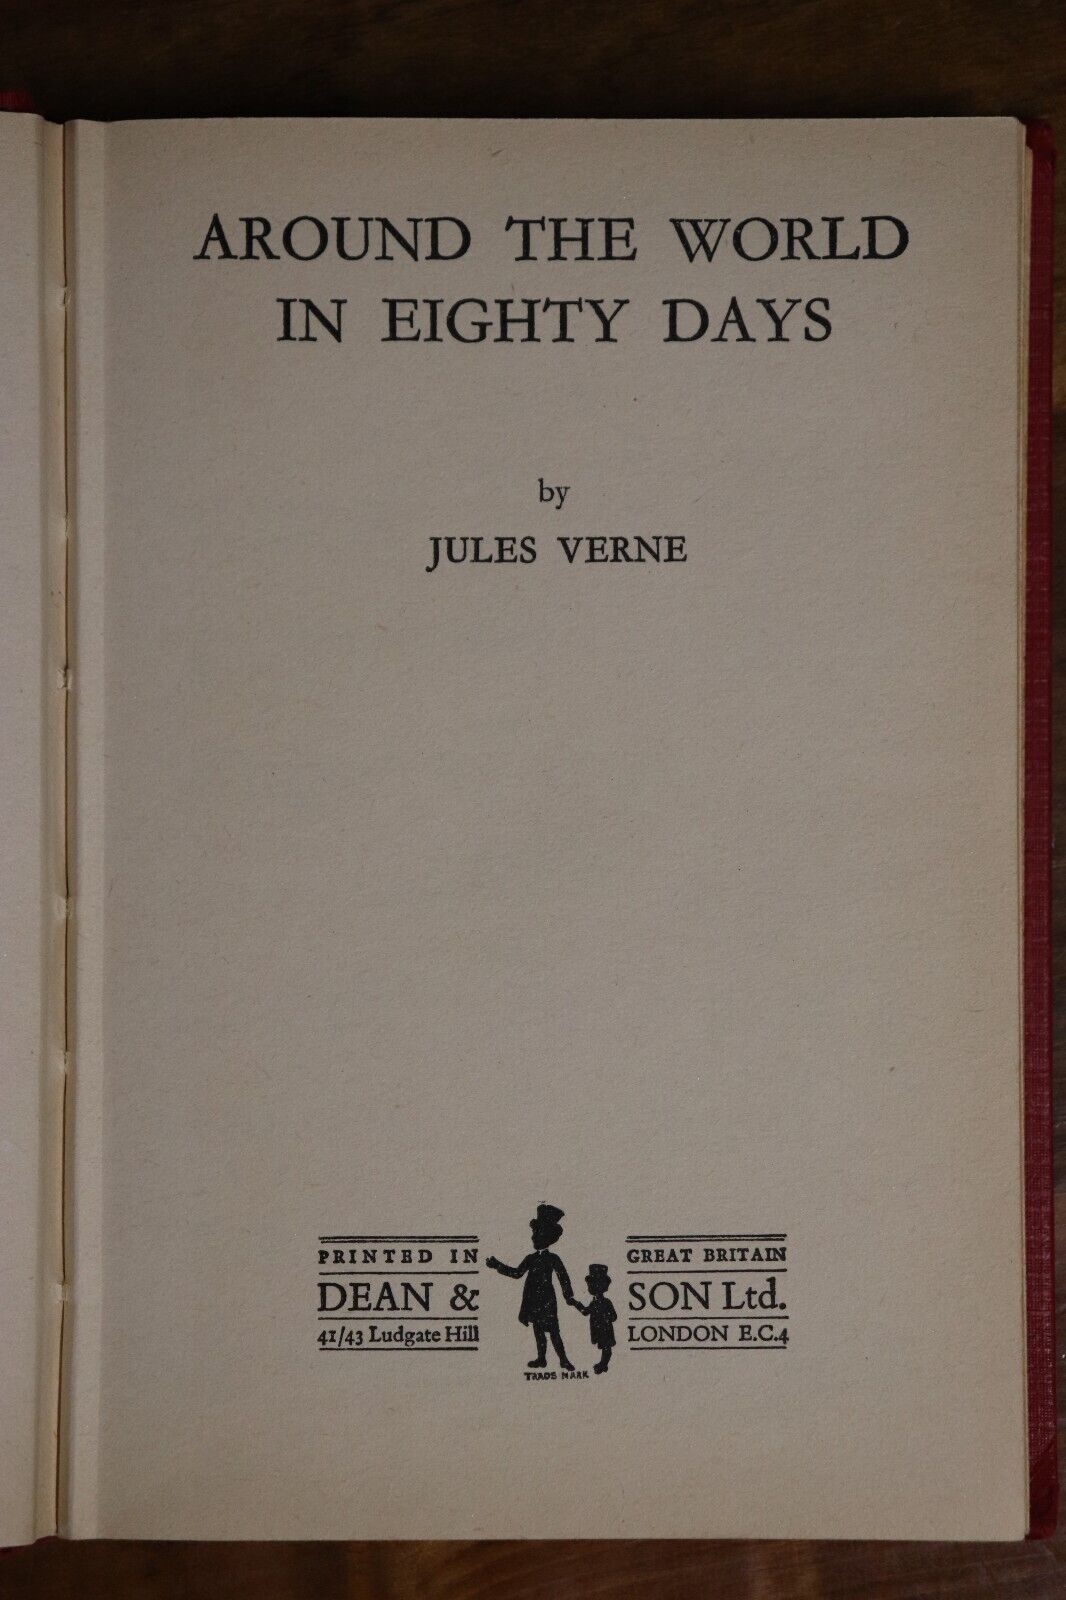 Around The World In Eighty Days by J Verne - c1960 - Vintage Literature Book - 0